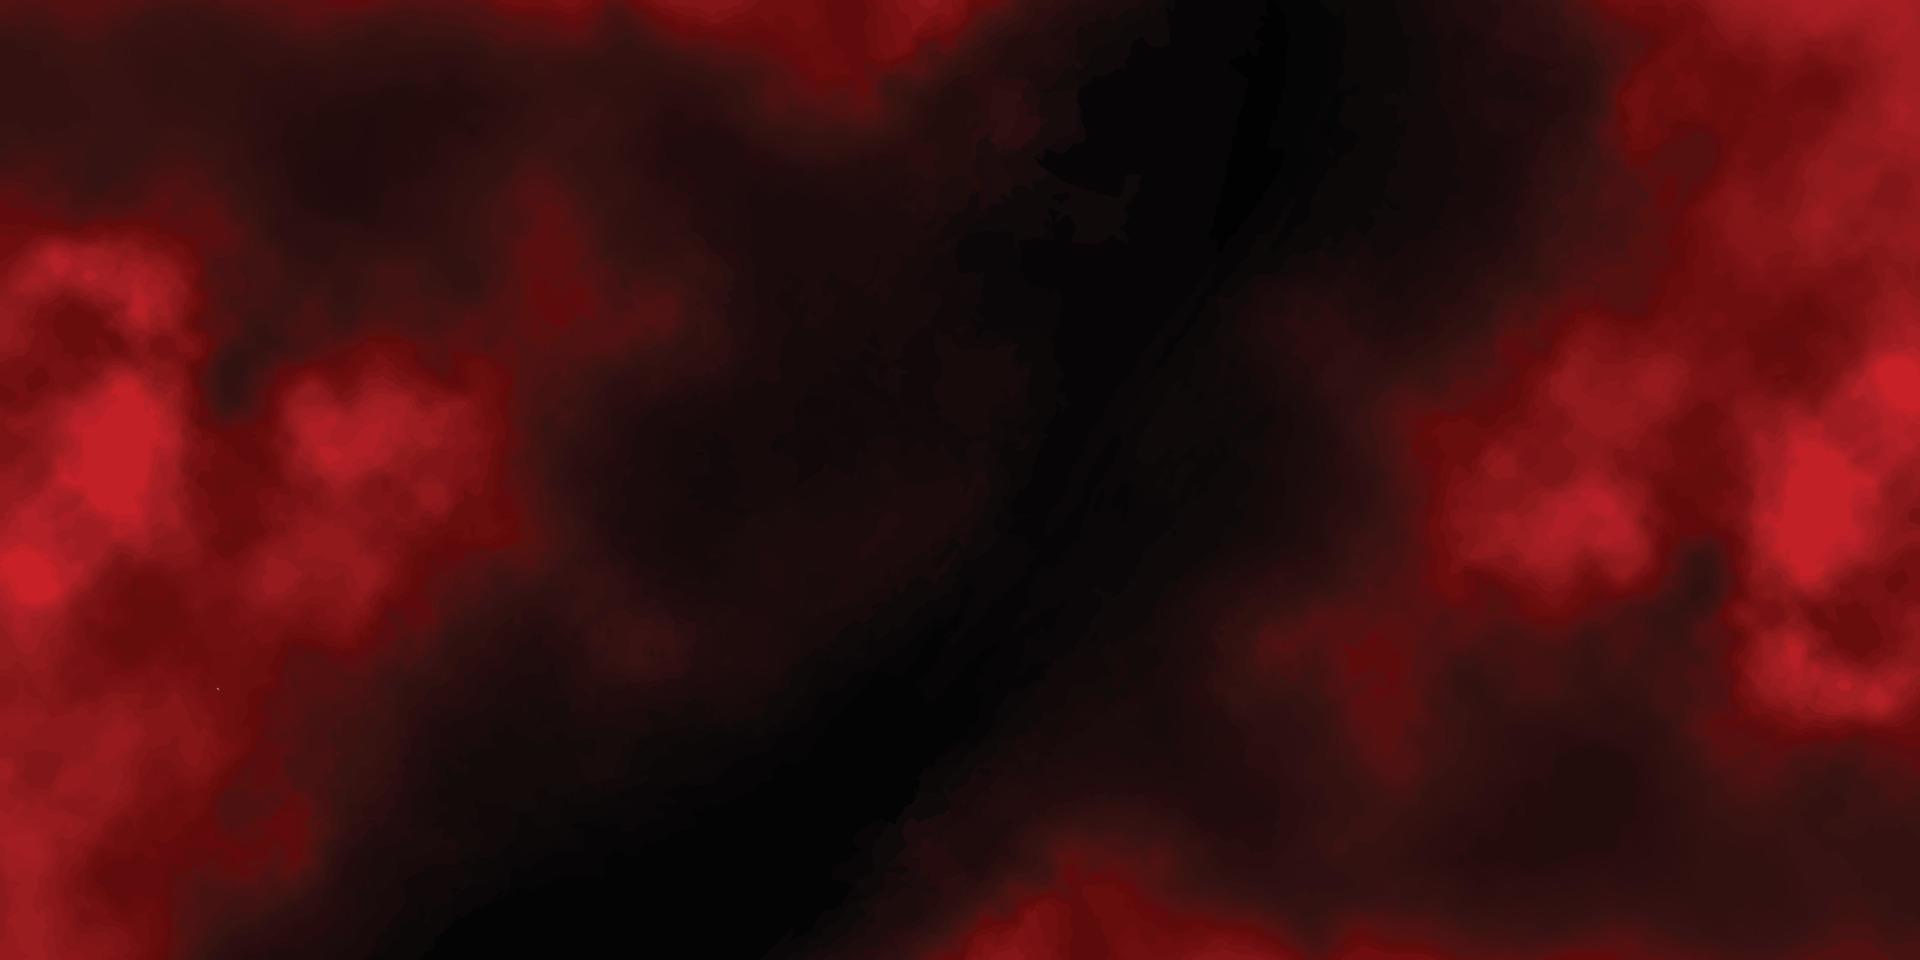 fond grunge rouge avec espace pour le texte, peinture abstraite de fond grunge rouge aquarelle, mur de ciment rouge avec fond de texture sombre, vieux fond grunge texturé noir et rouge peint à la main vecteur